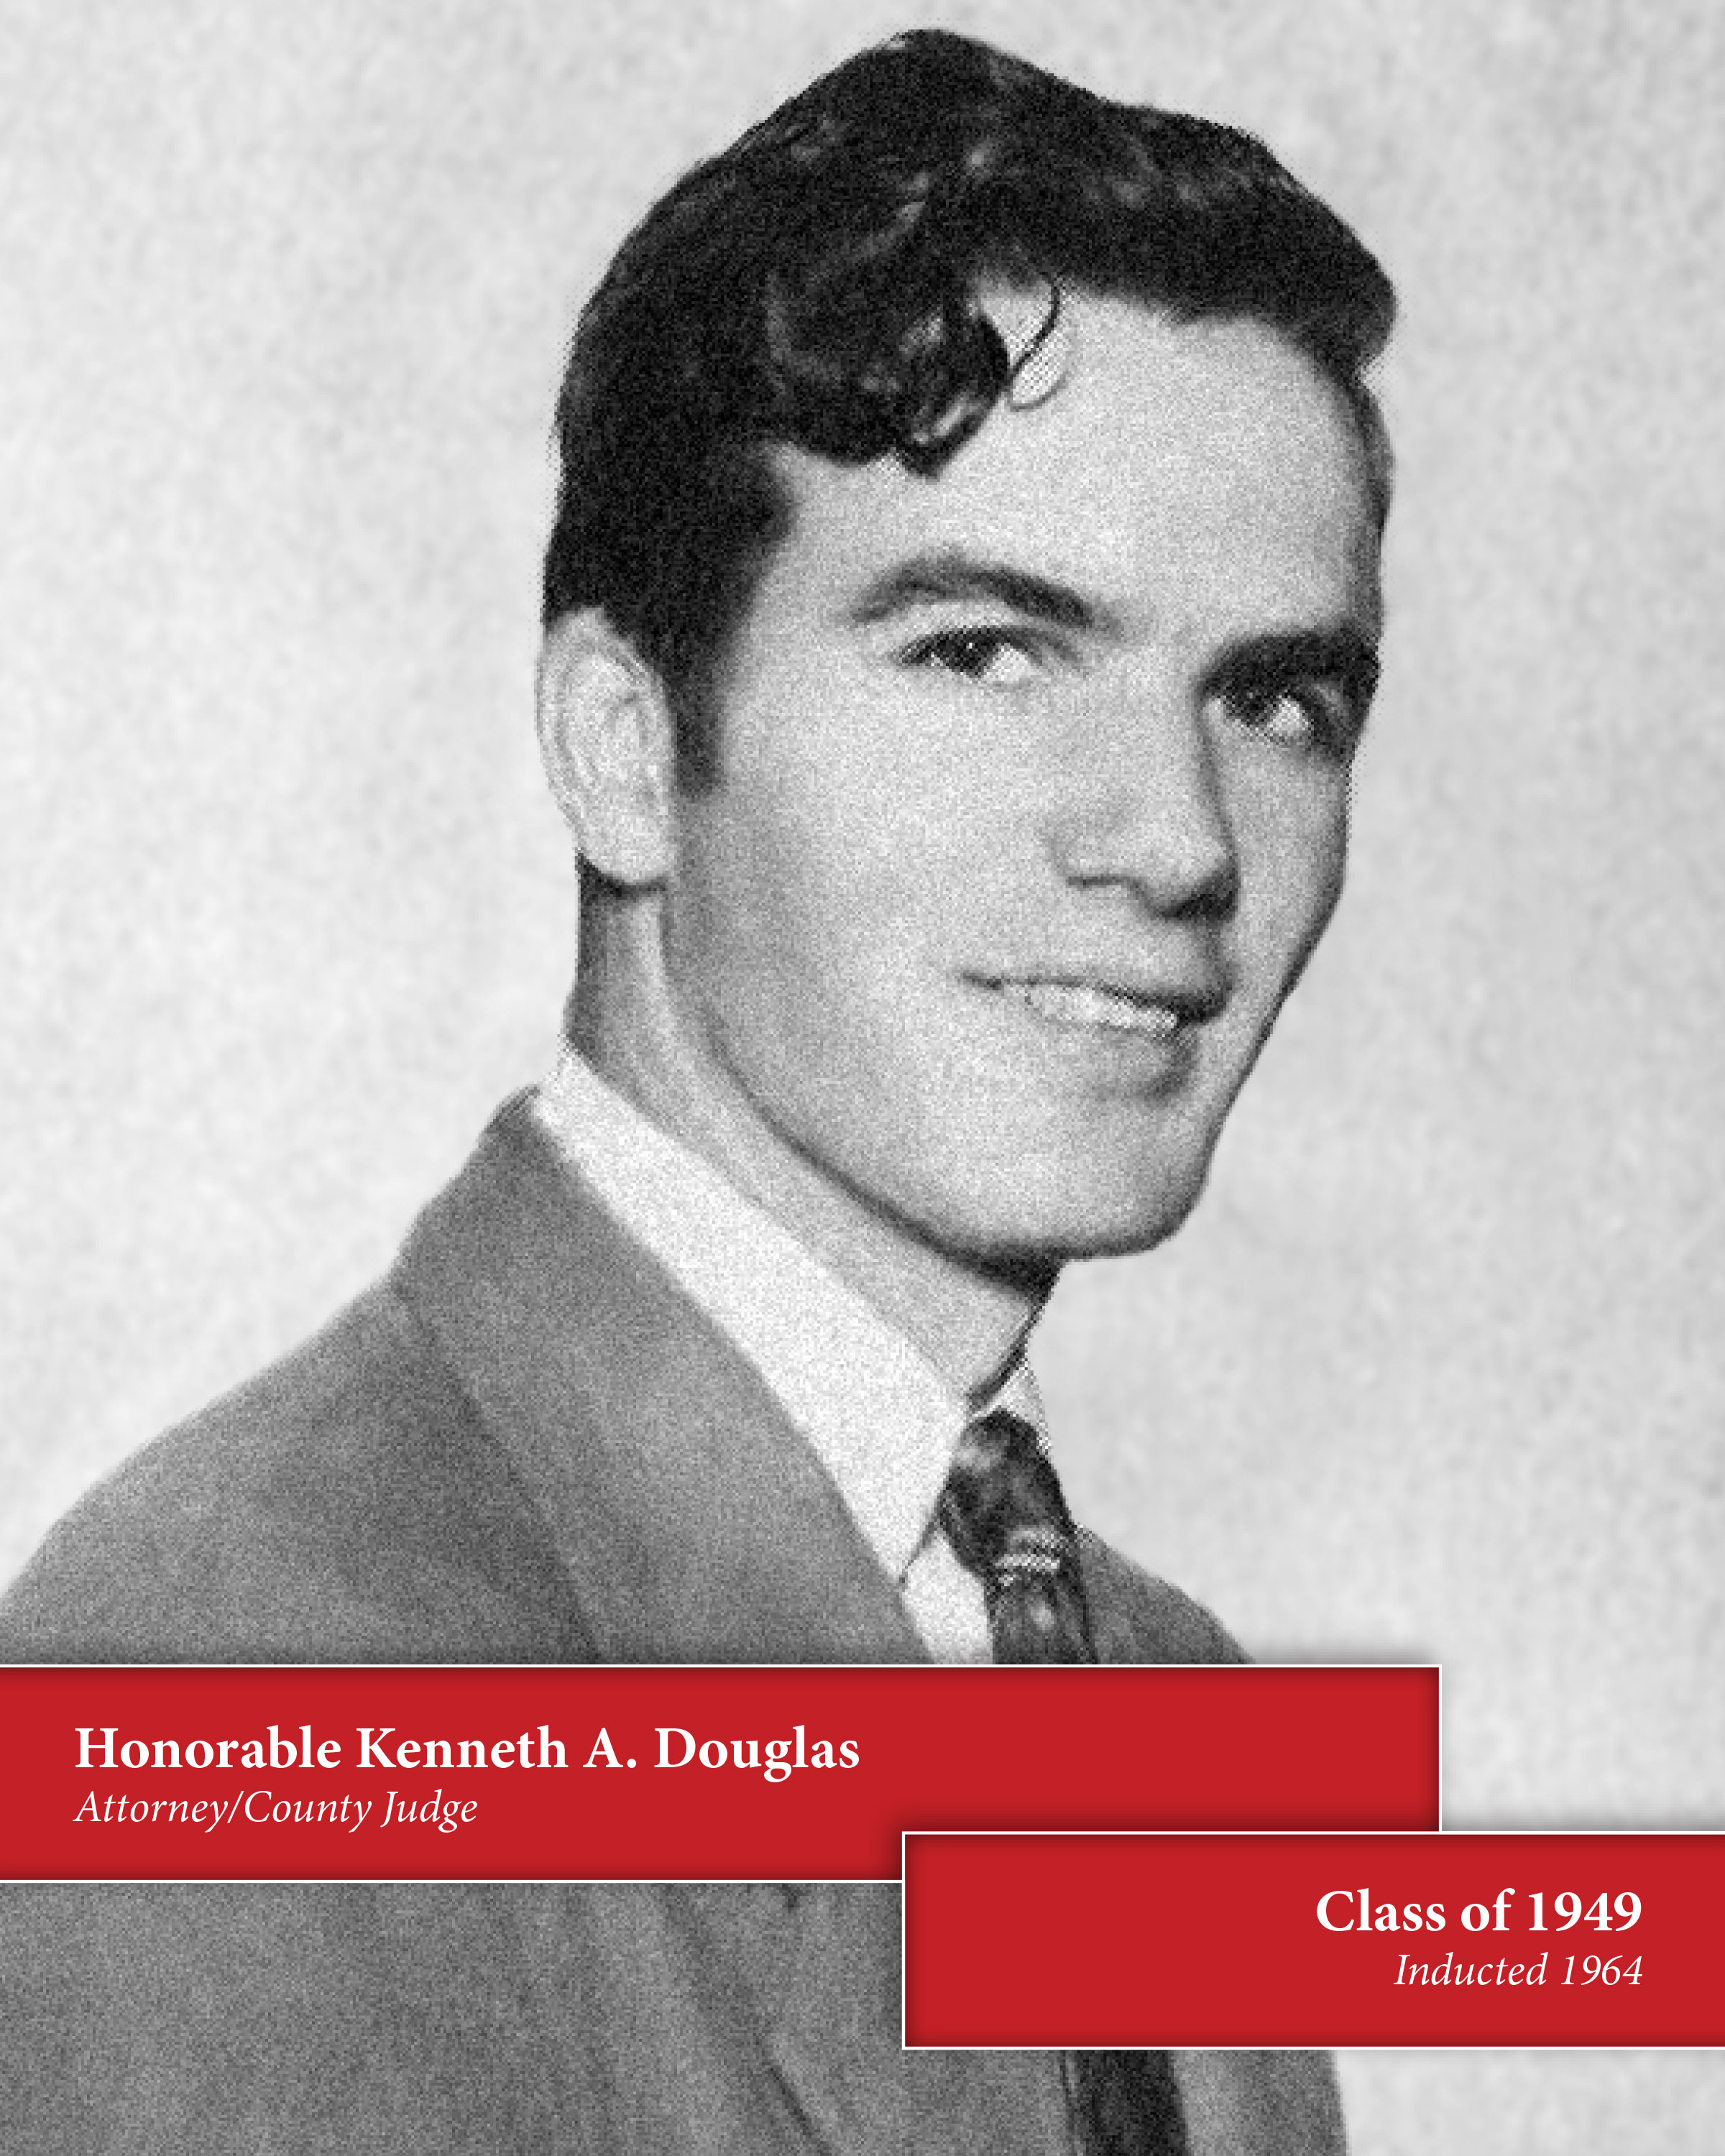 Kenneth Douglas